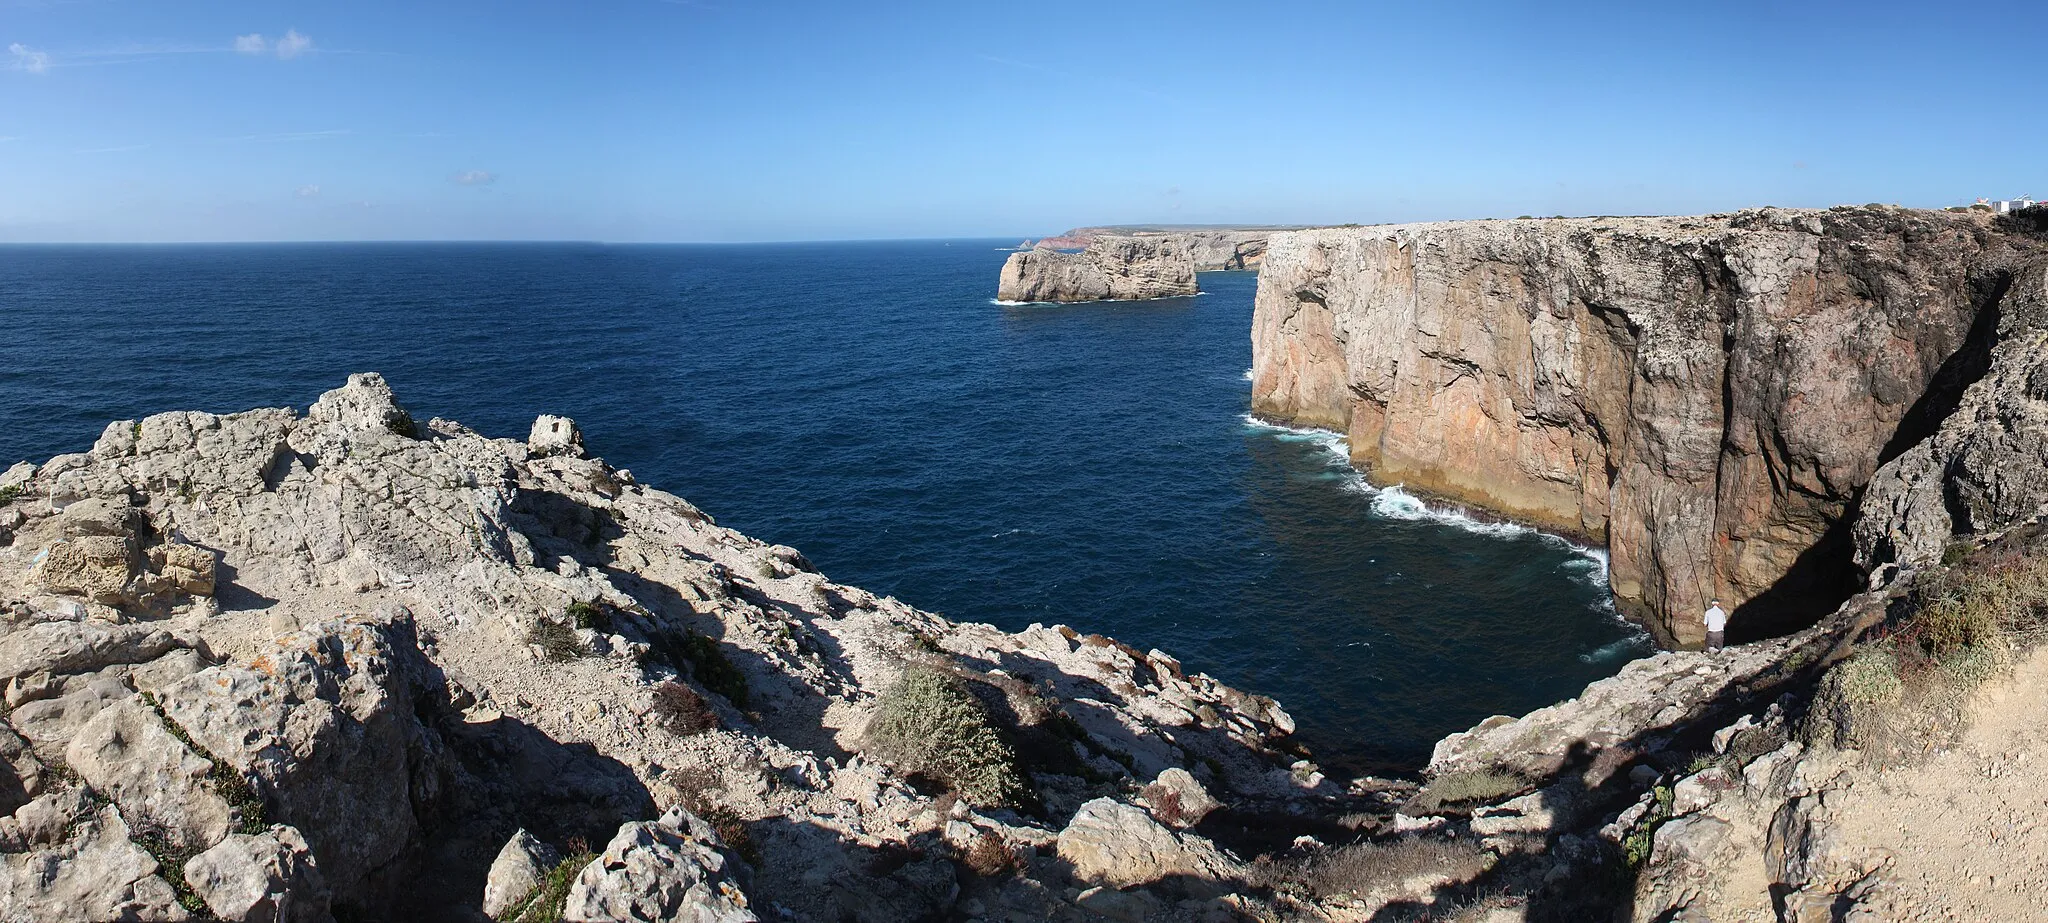 Photo showing: Steilküste bei Sagres, dem südwestlichsten Punkt Europas, Cabo de São Vicente